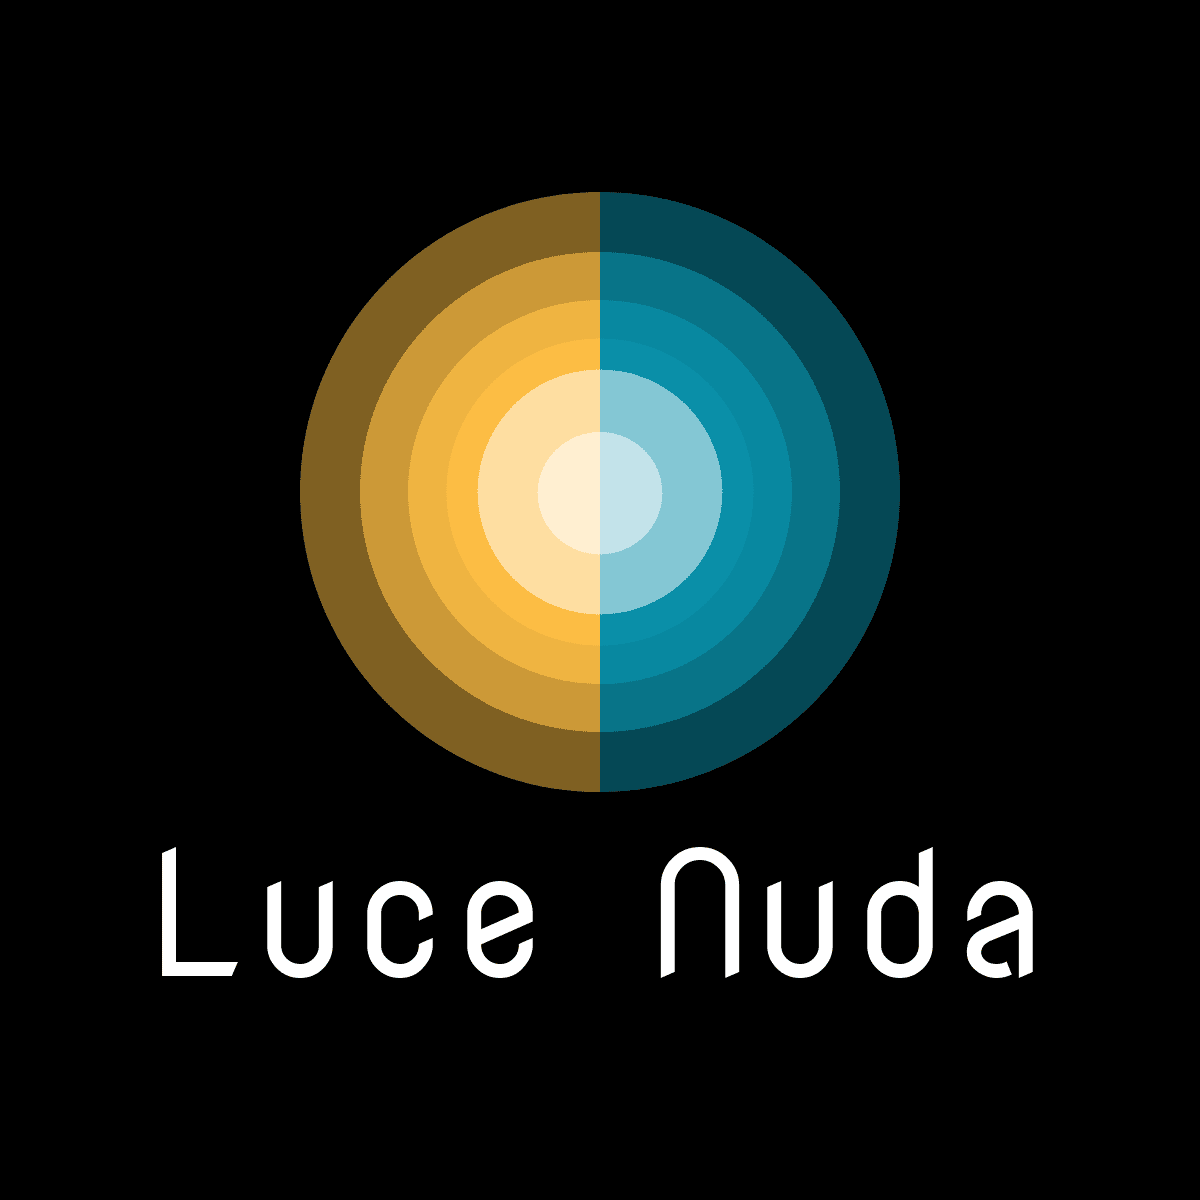 Luce Nuda